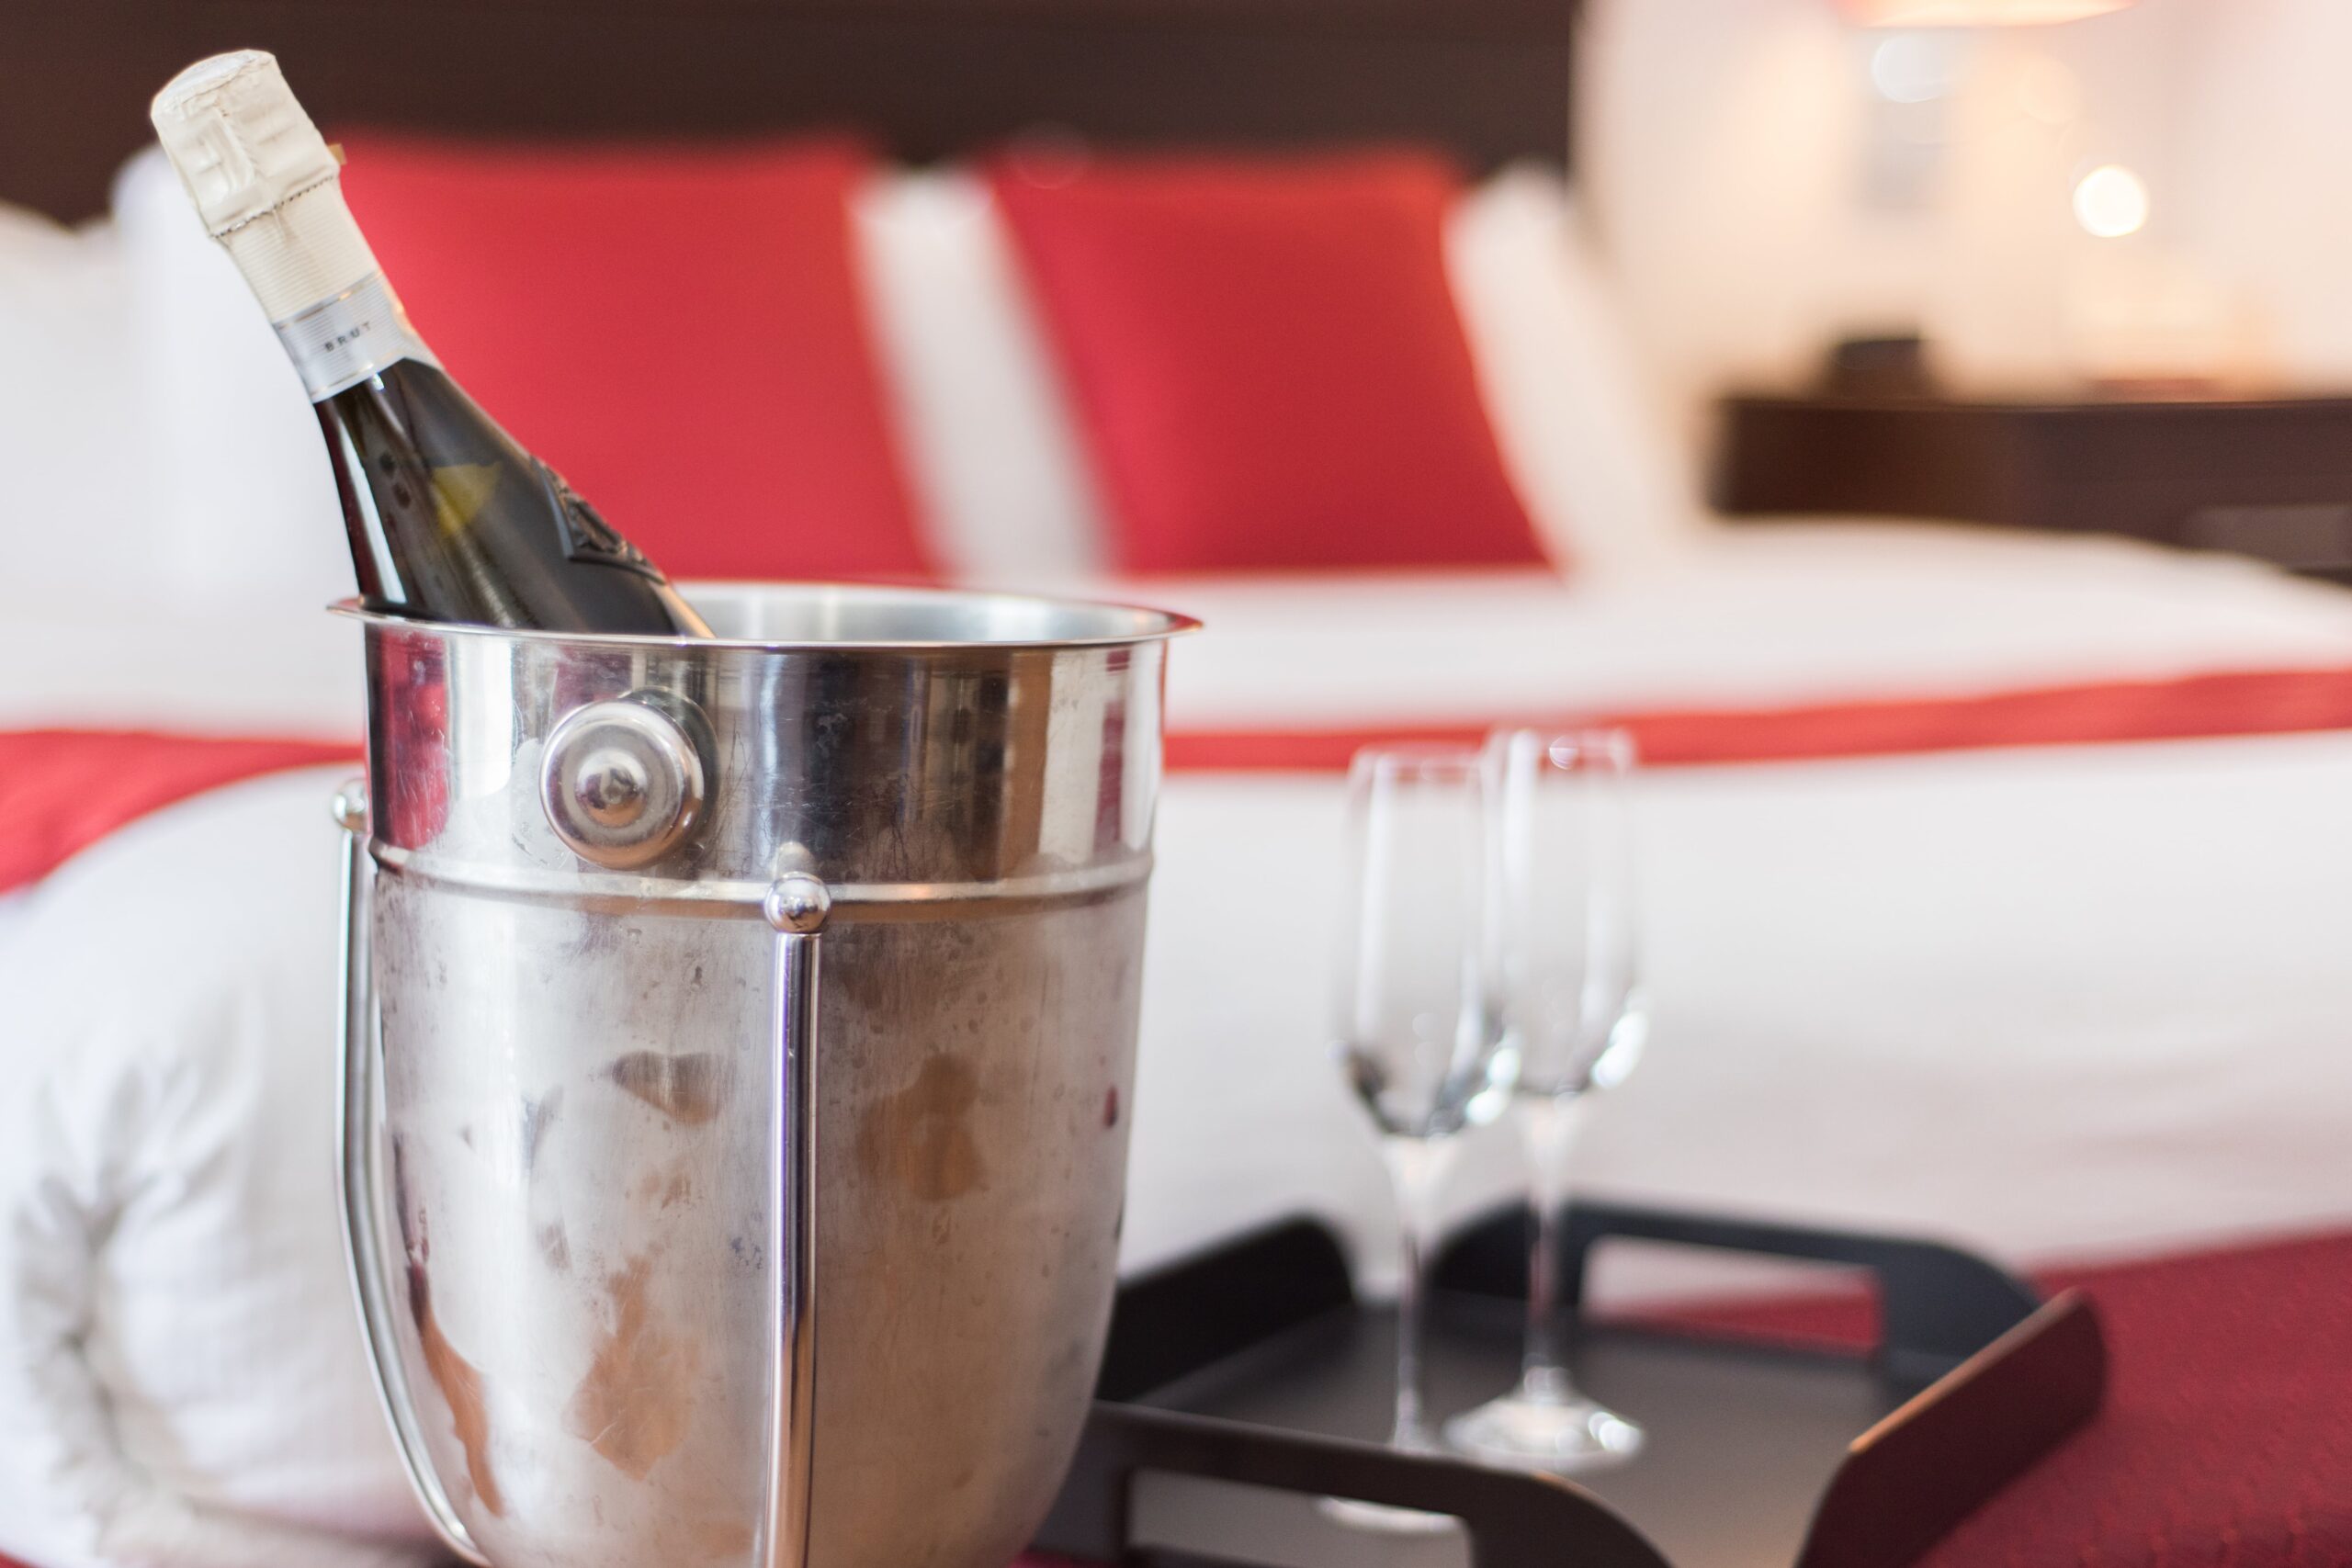 Forfait romantique en Estrie offert par l'Hôtel Le Floral comprenant une chambre avec service de champagne